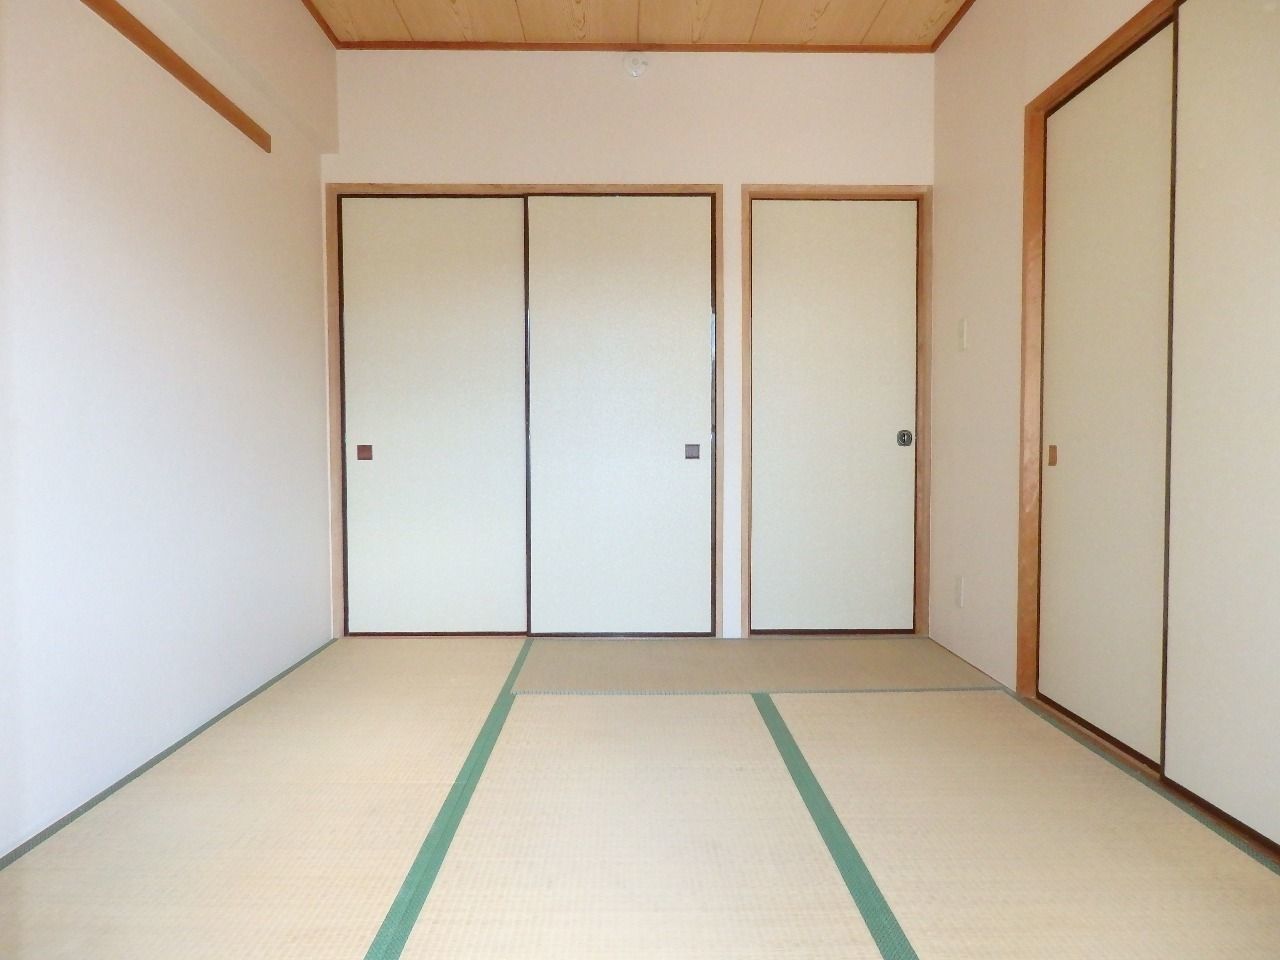 最近注目されてきている日本の畳。いぐさの香りが日本の心を思い出させます。